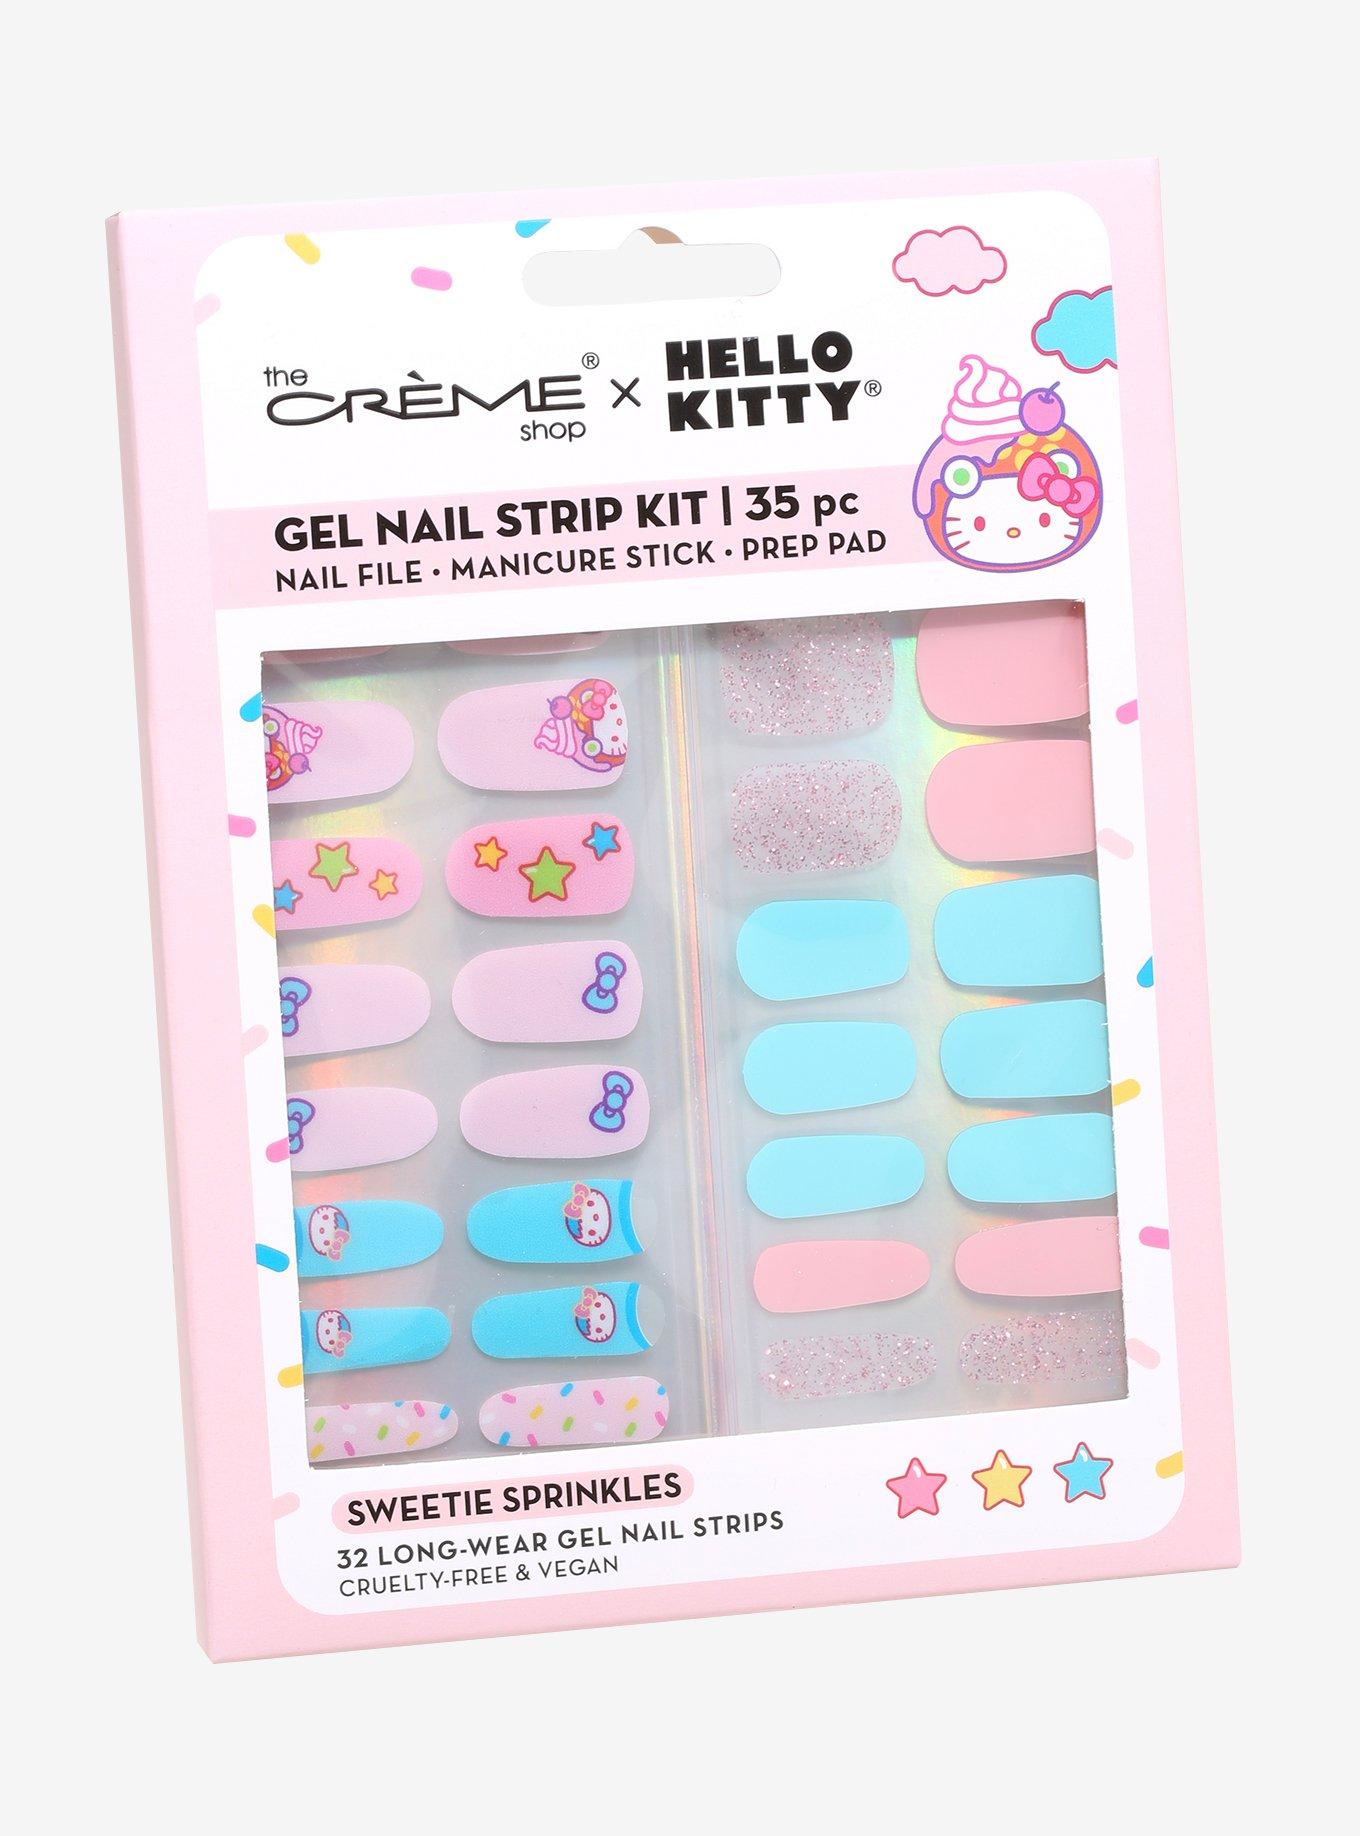 Sanrio Hello Kitty Nail Stickers Full Wraps Polish Strips Cute